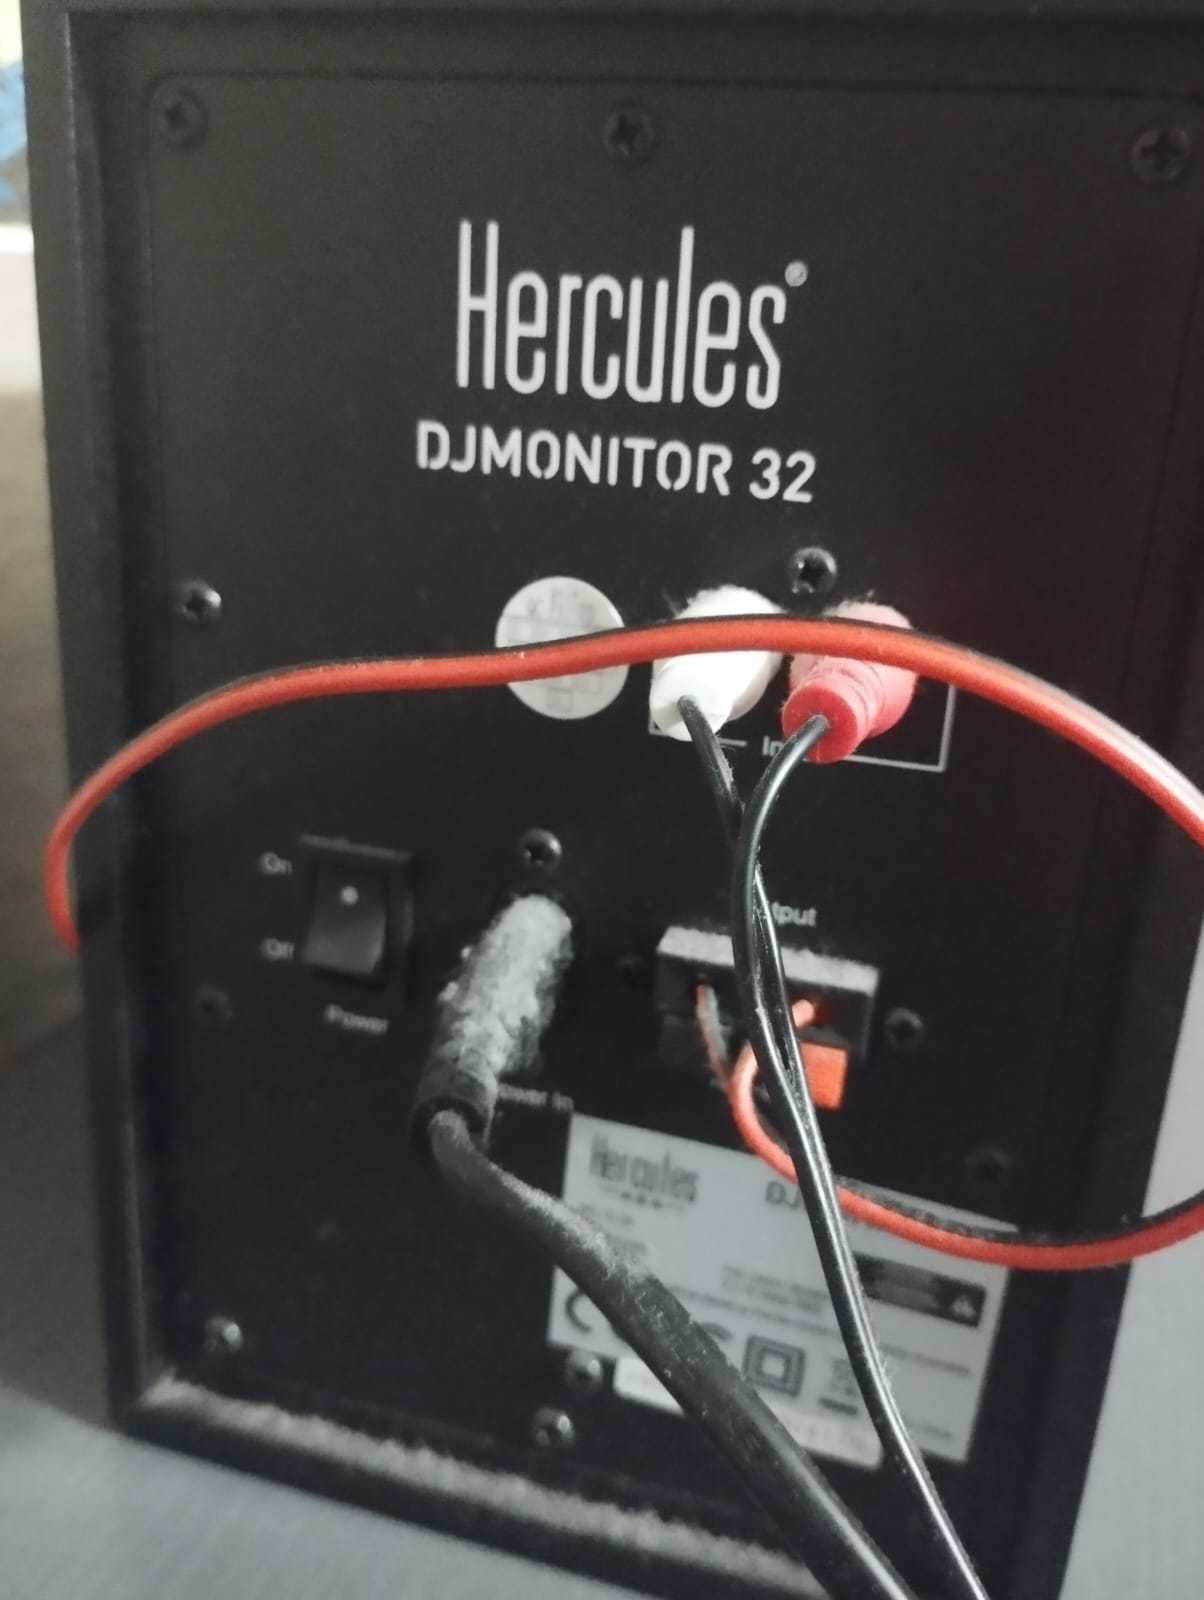 Colunas Dj Monitor 32 Hercules